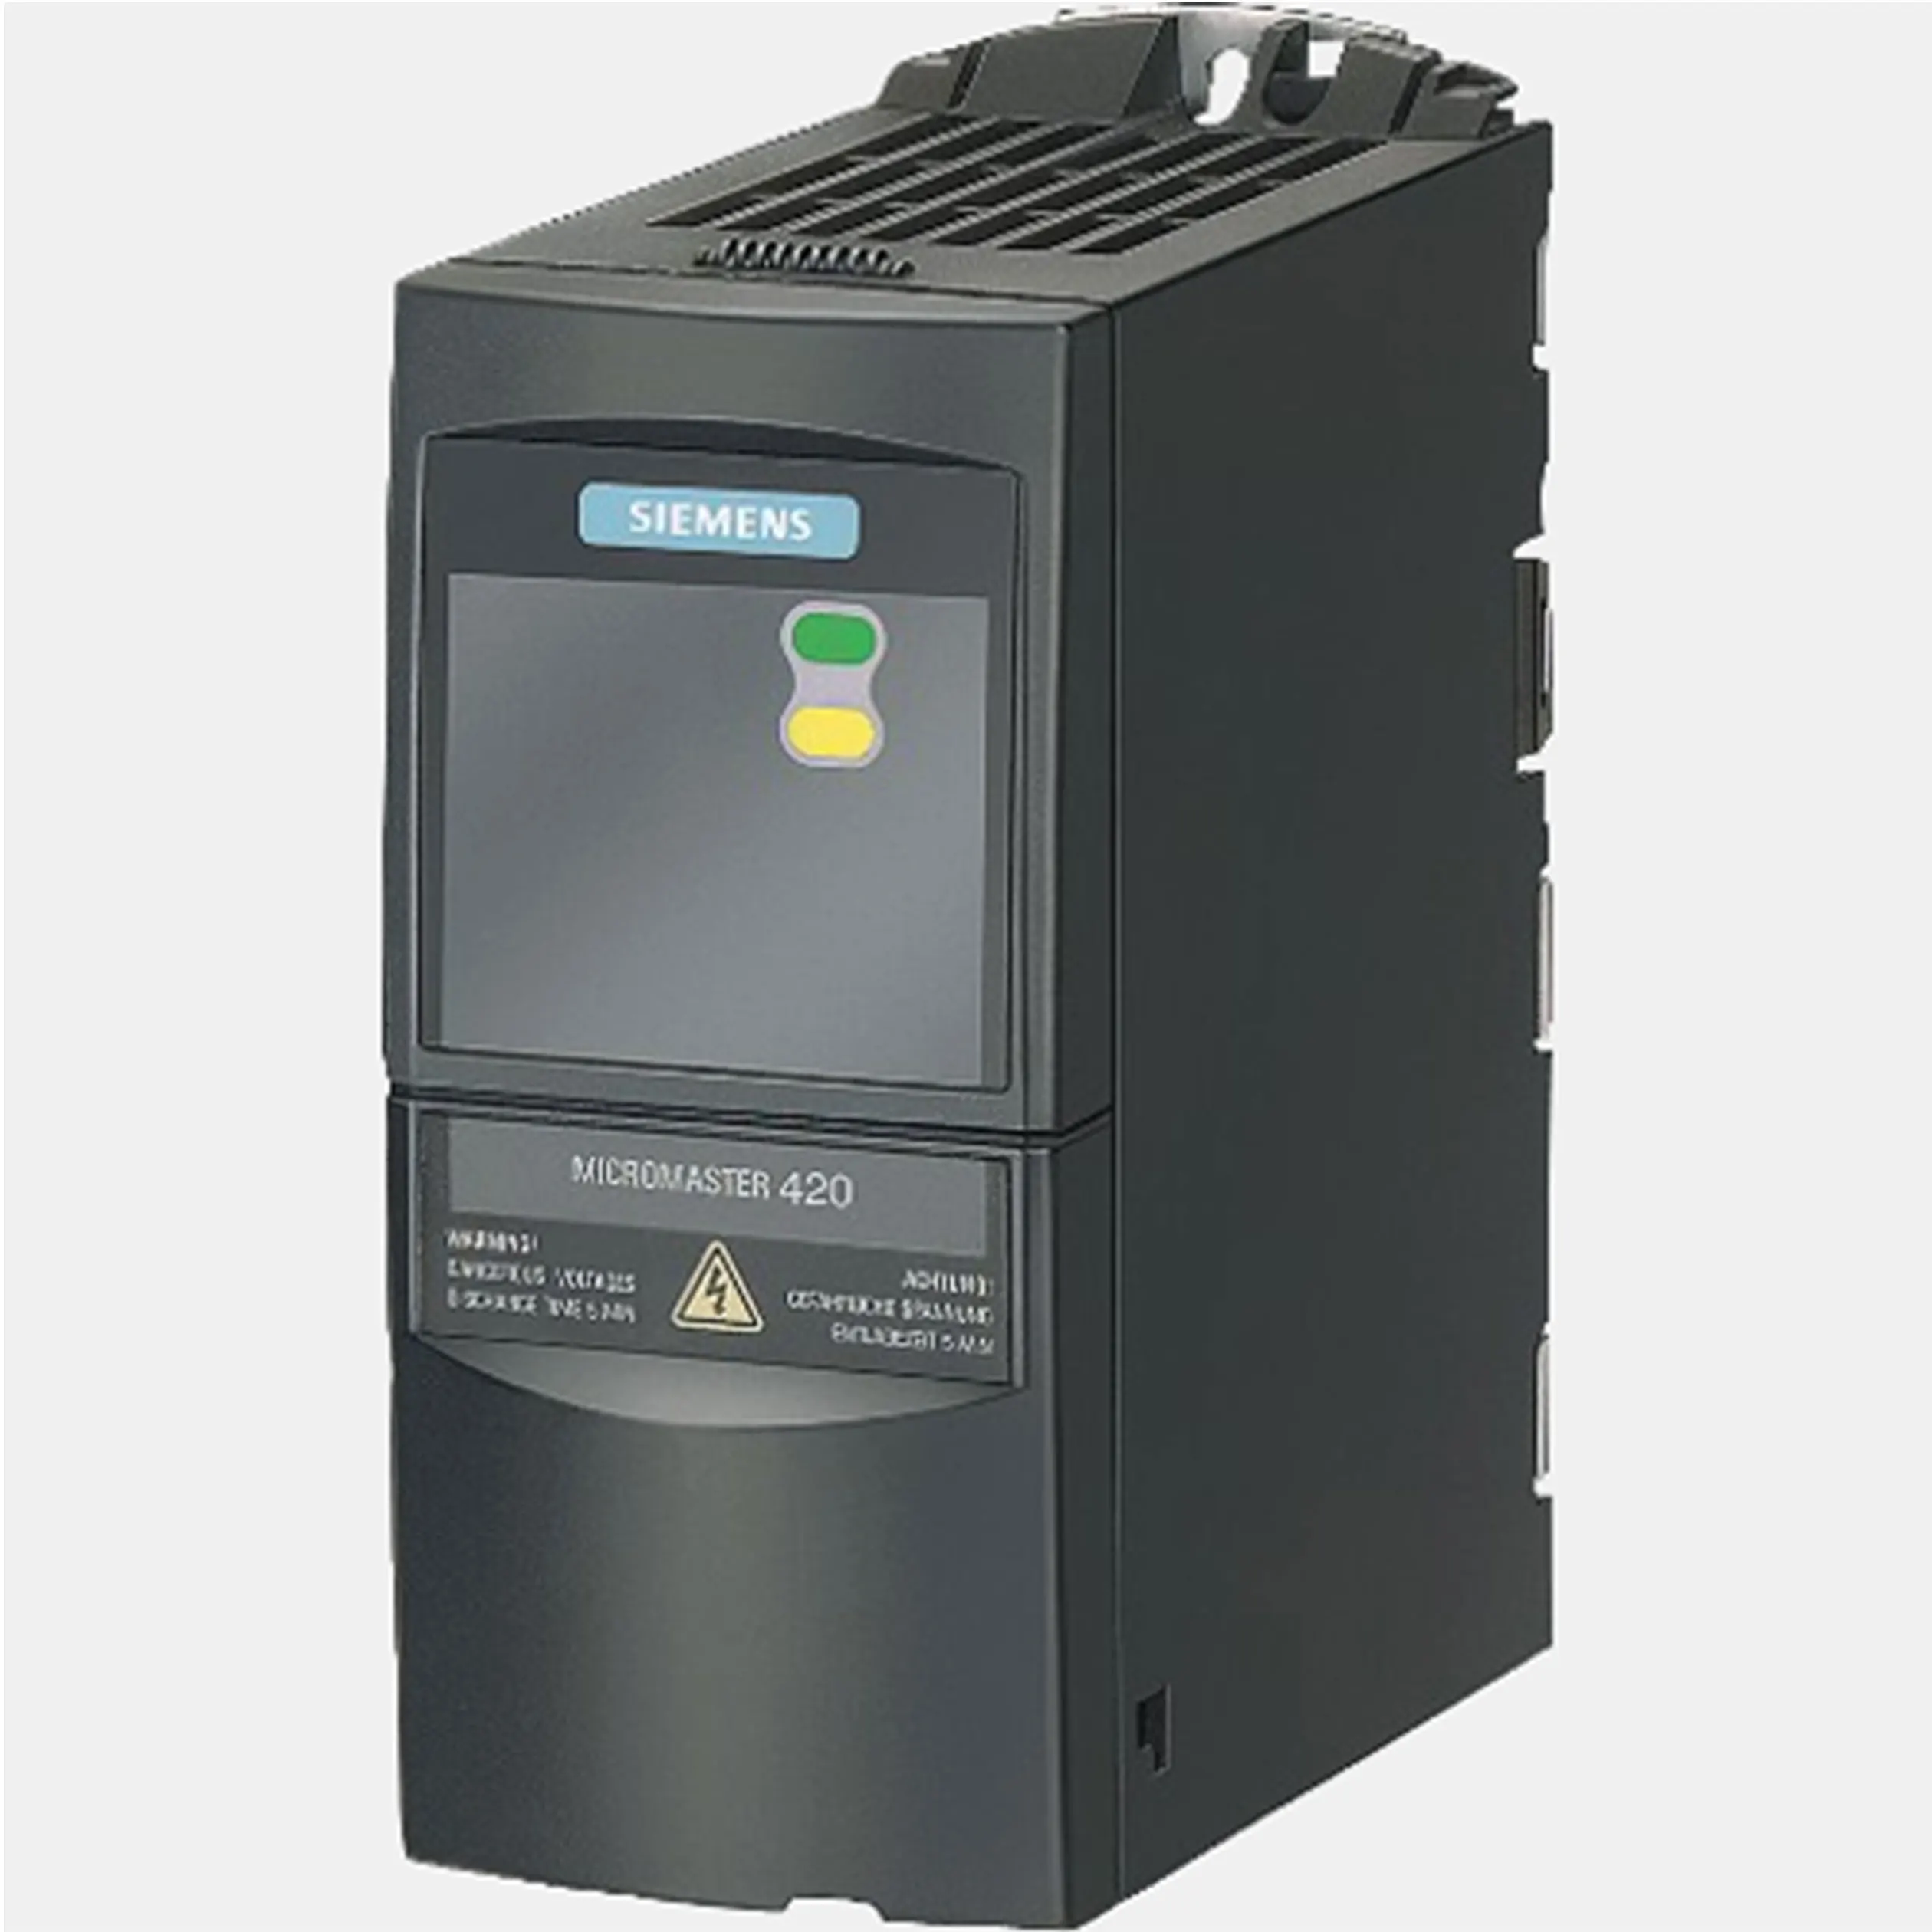 1.5 kw. Преобразователи частоты Micromaster 440. Преобразователь частоты Micromaster-420. Преобразователи частоты Siemens Micromaster 420. Частотник Siemens Micromaster 440.